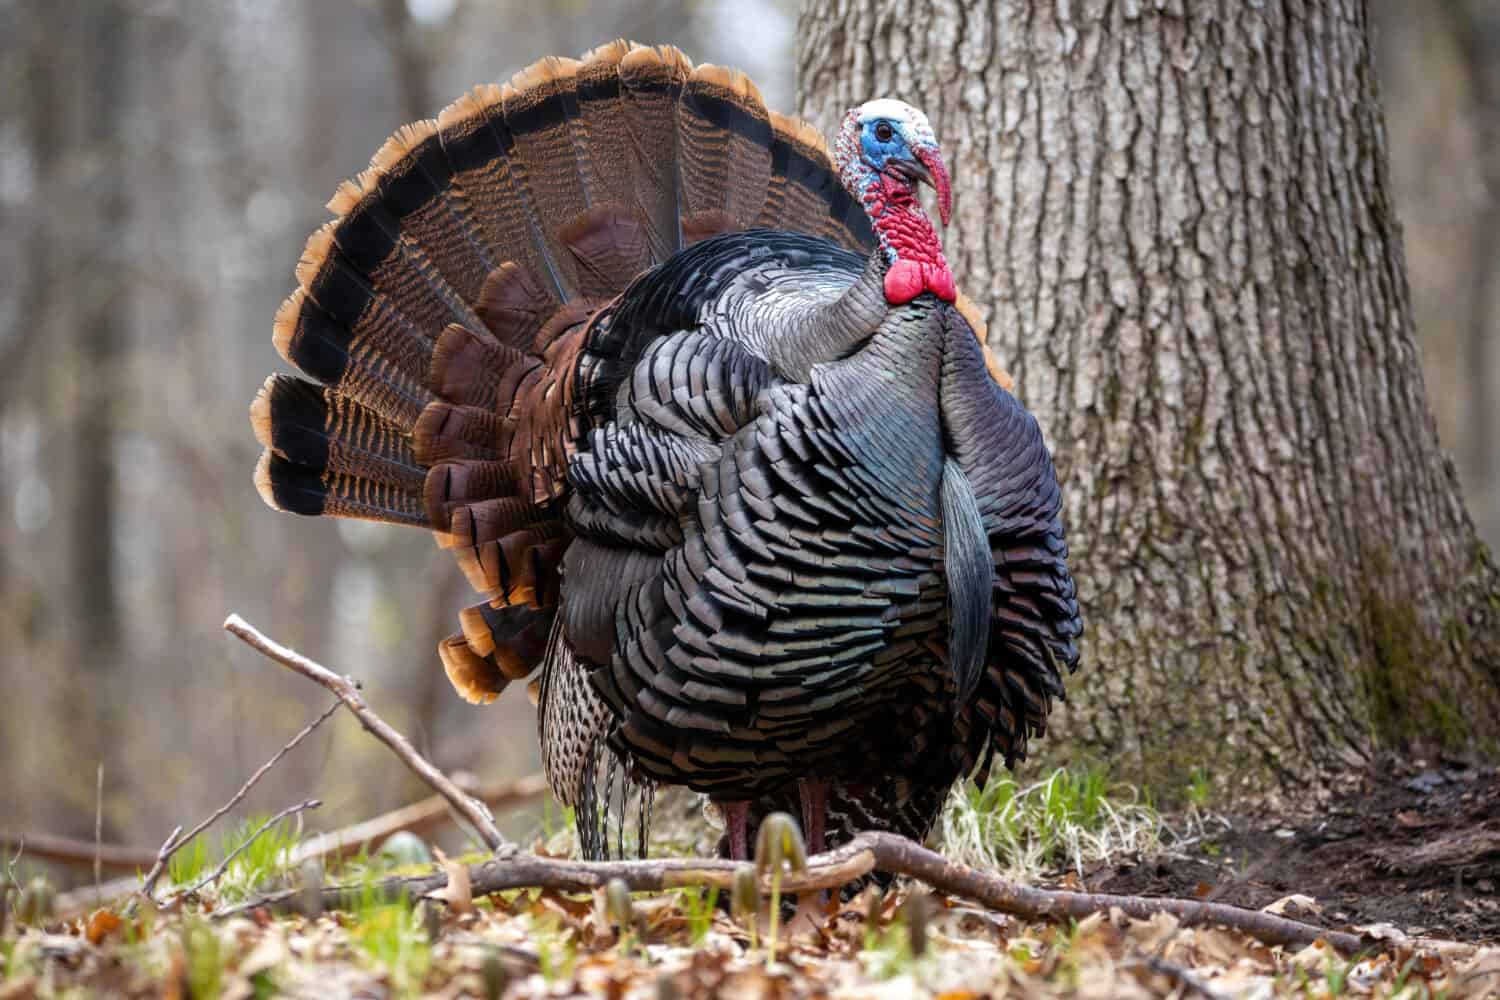 Turkey in Michigan forest, Michigan wildlife 